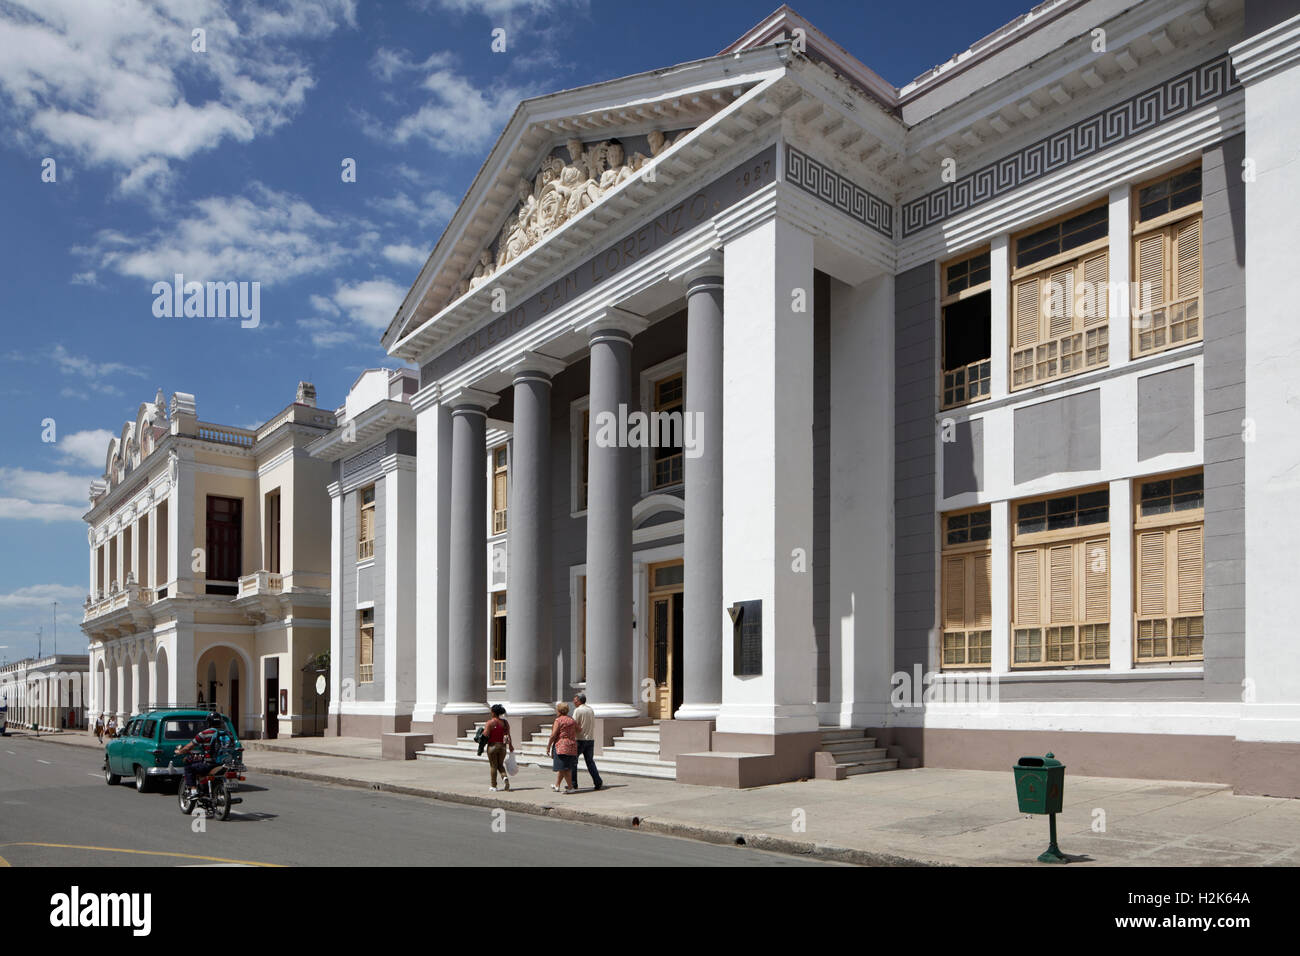 University, Colegio San Lorenzo, historic city centre, Cienfuegos, Cienfuegos Province, Cuba Stock Photo